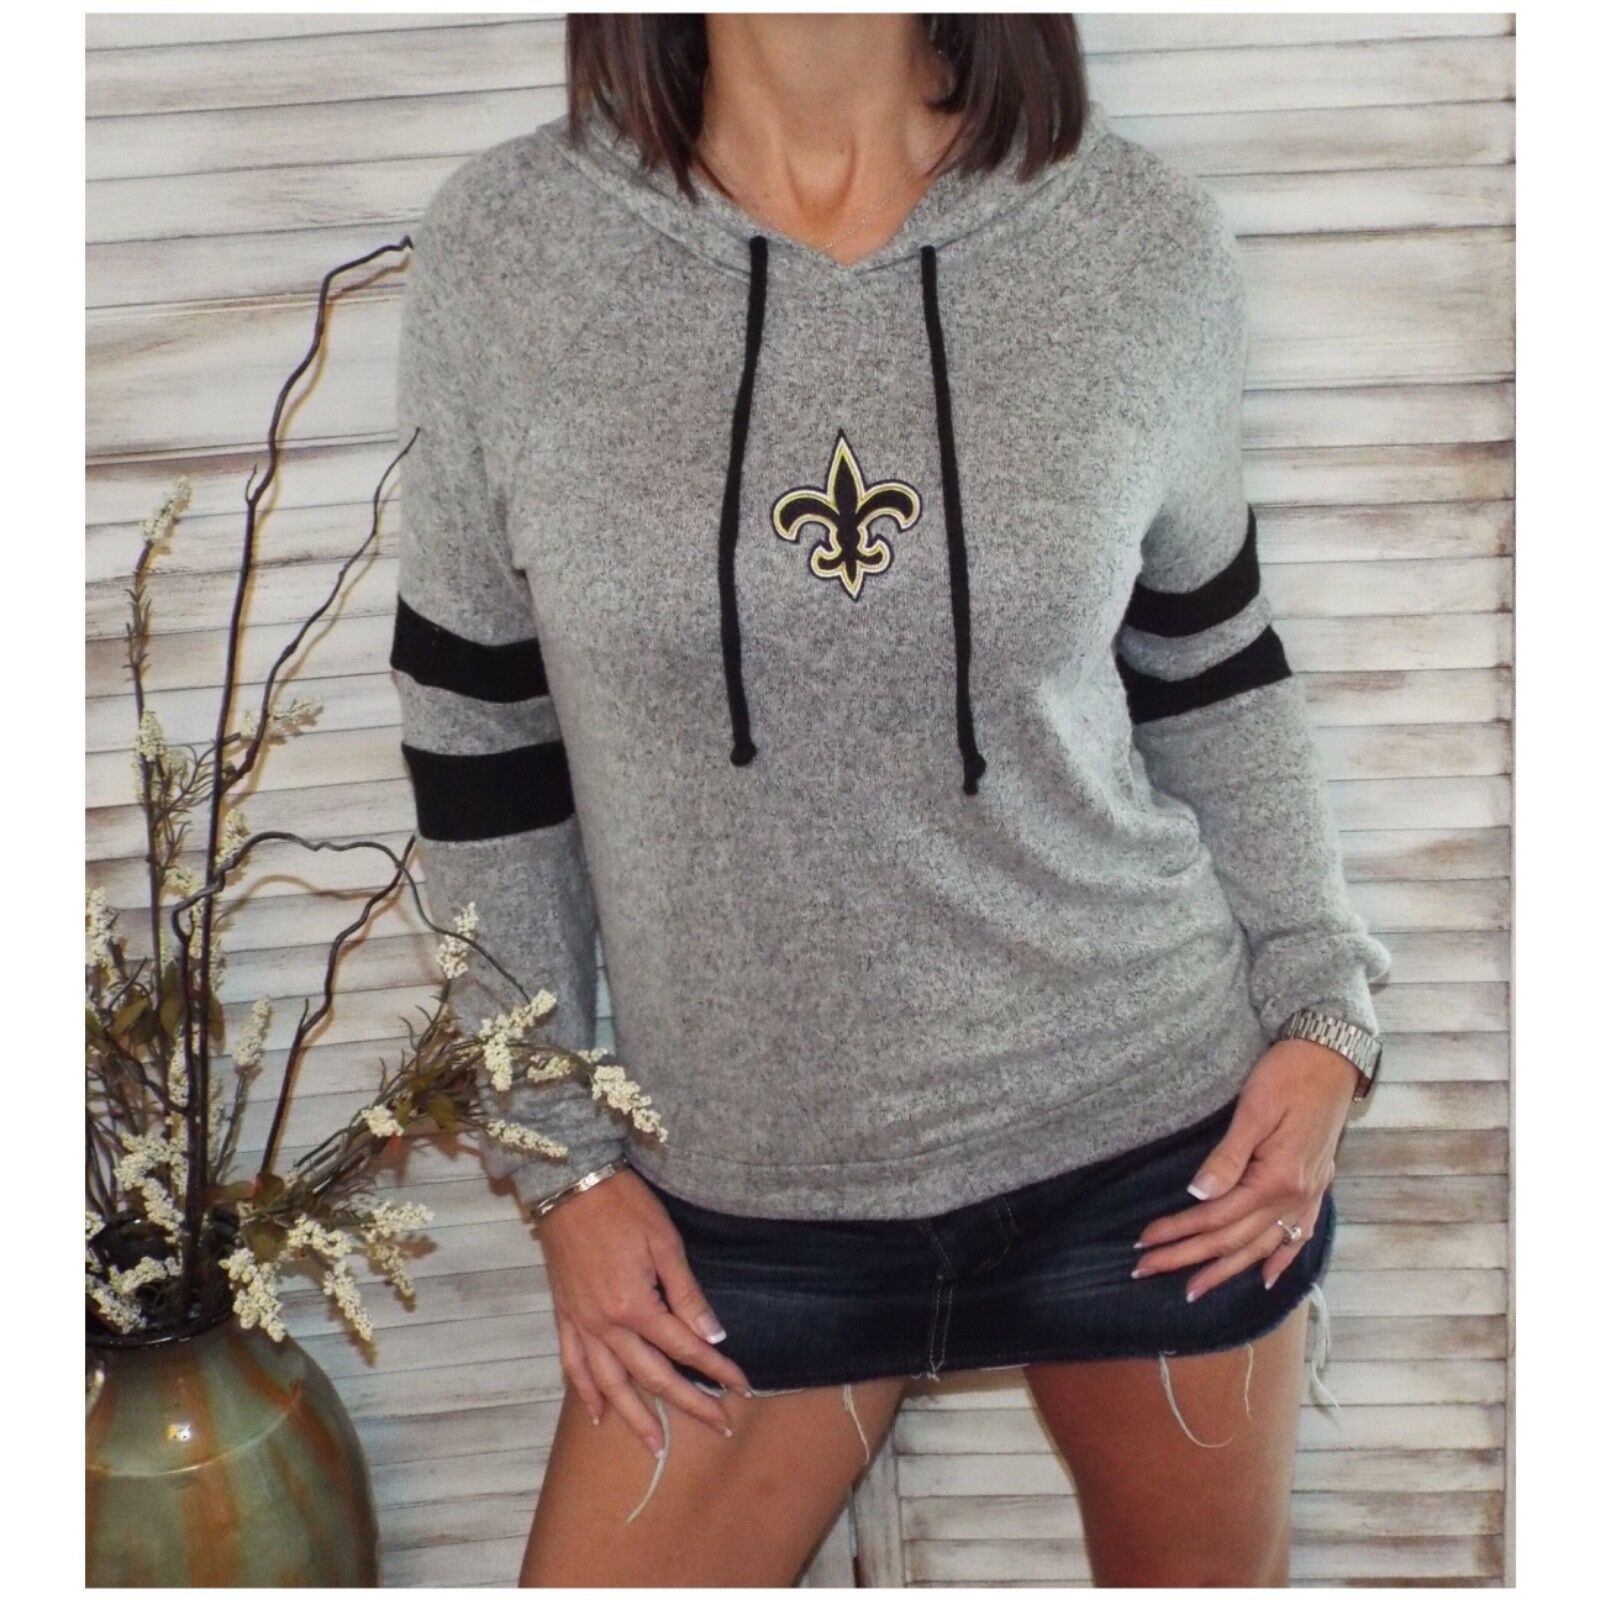 New Orleans Saints Fleur de Lis Contrast Sweater Knit Hoodie L/S Gray S/M/L